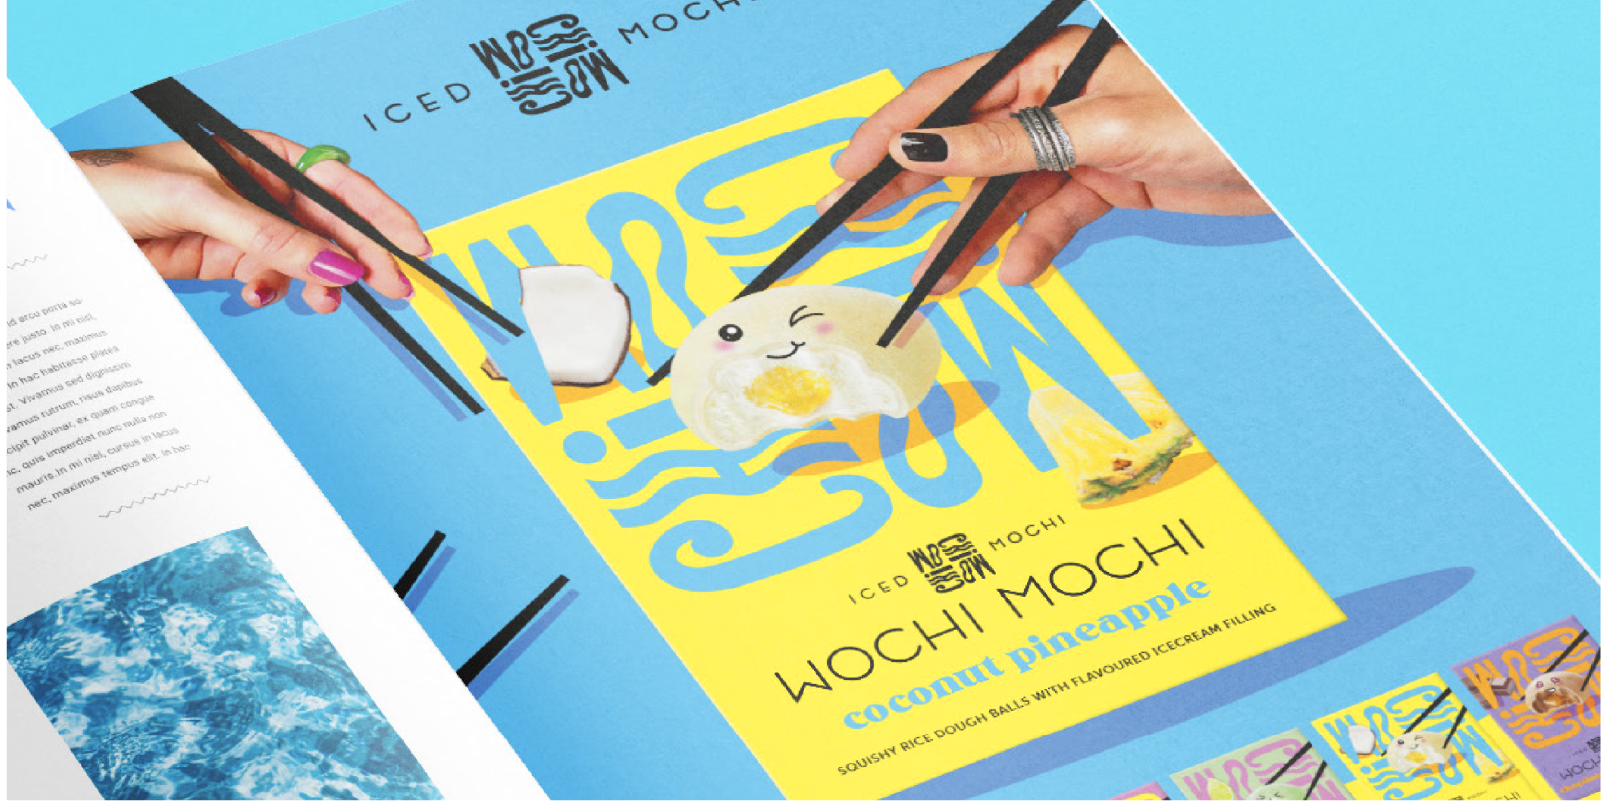 Wochi Mochi package design by Brum